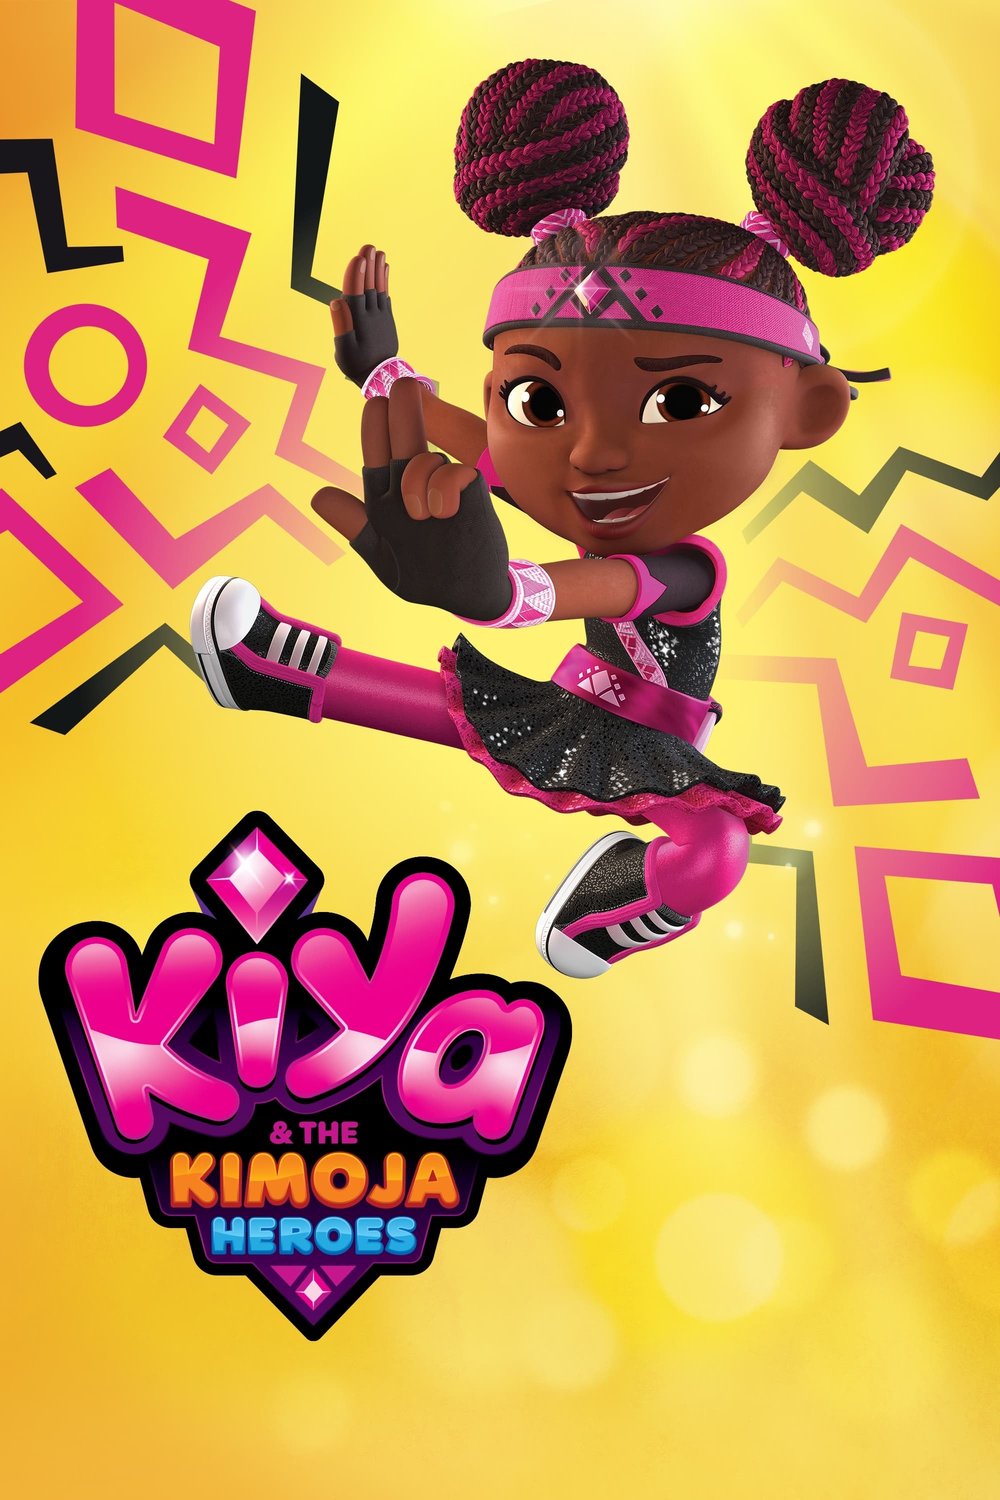 L'affiche du film Kiya & the Kimoja Heroes